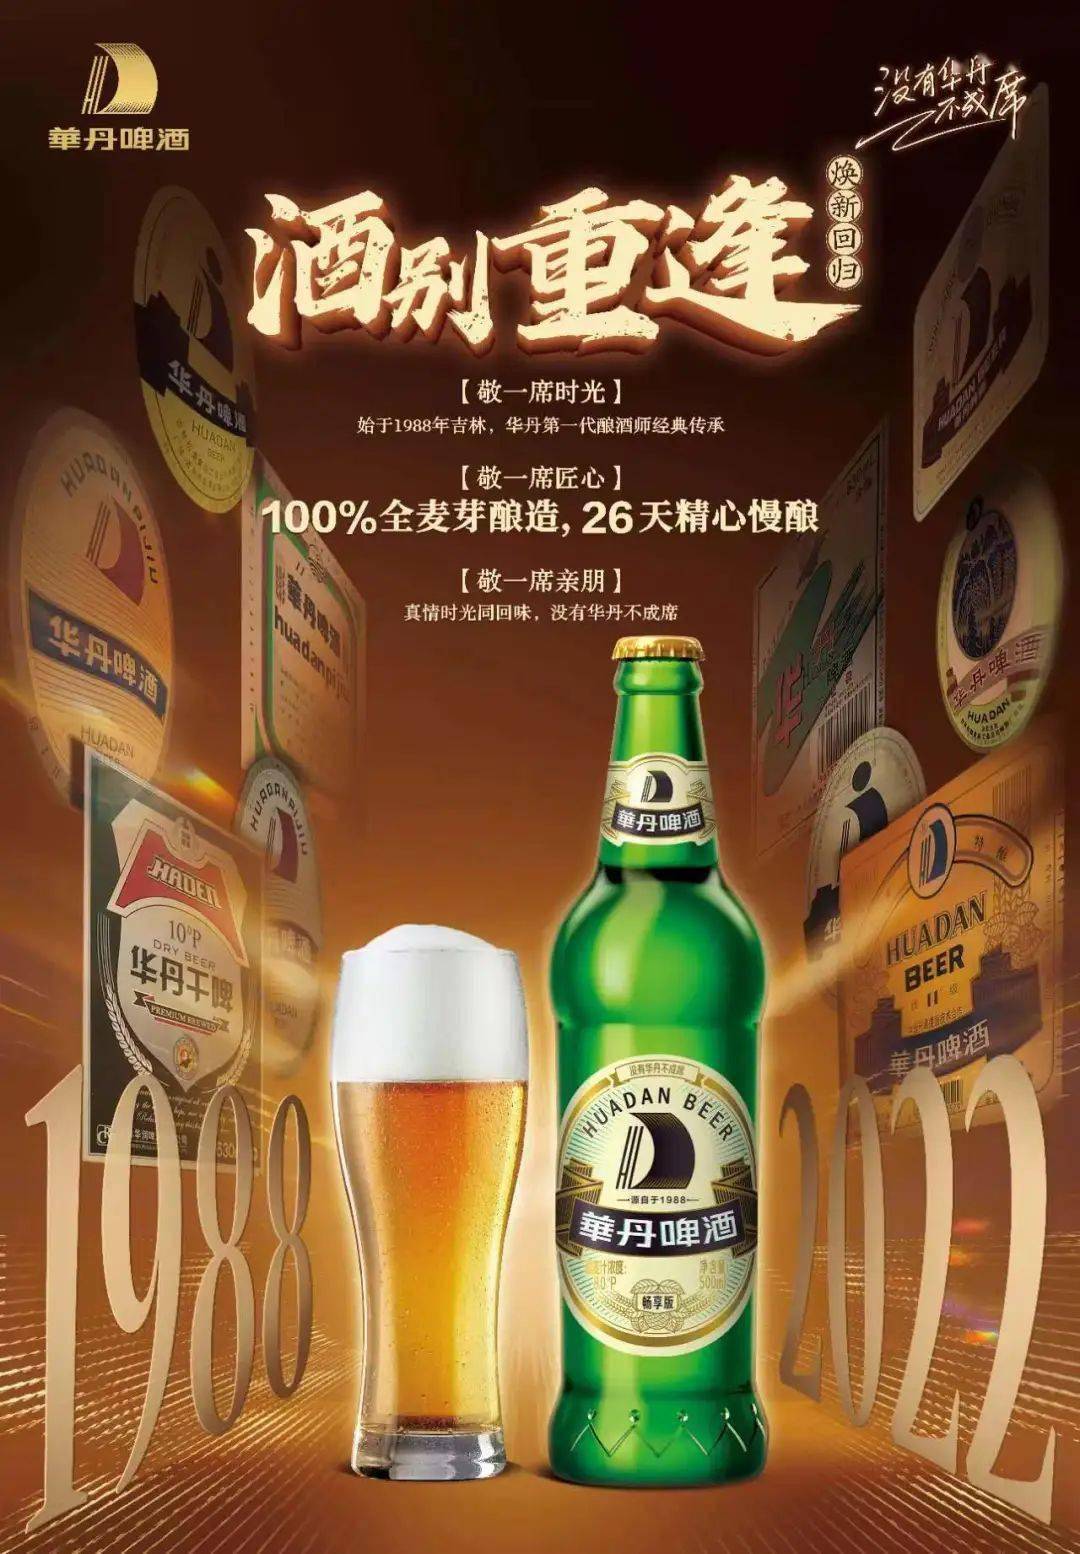 吉林华丹啤酒图片